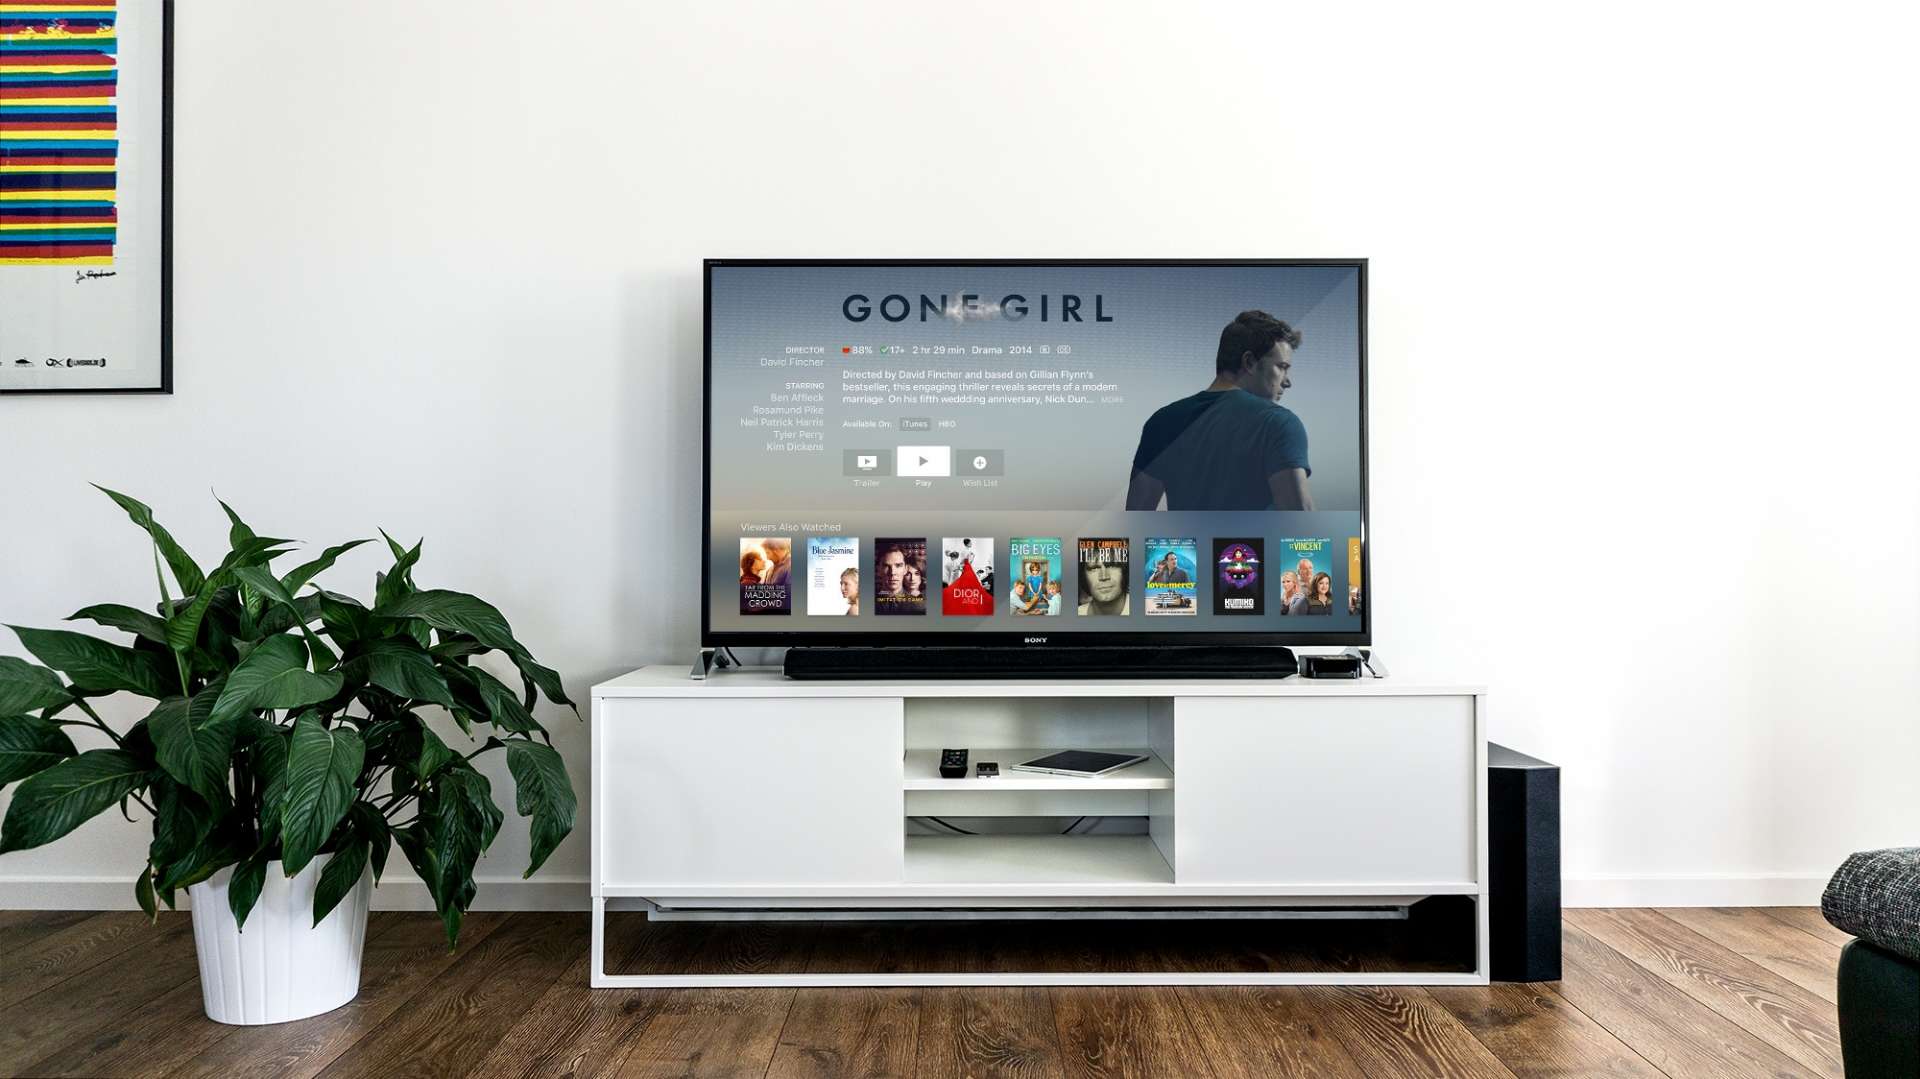 כמה טלוויזיה אתם רואים בבית? שווה את המחיר?